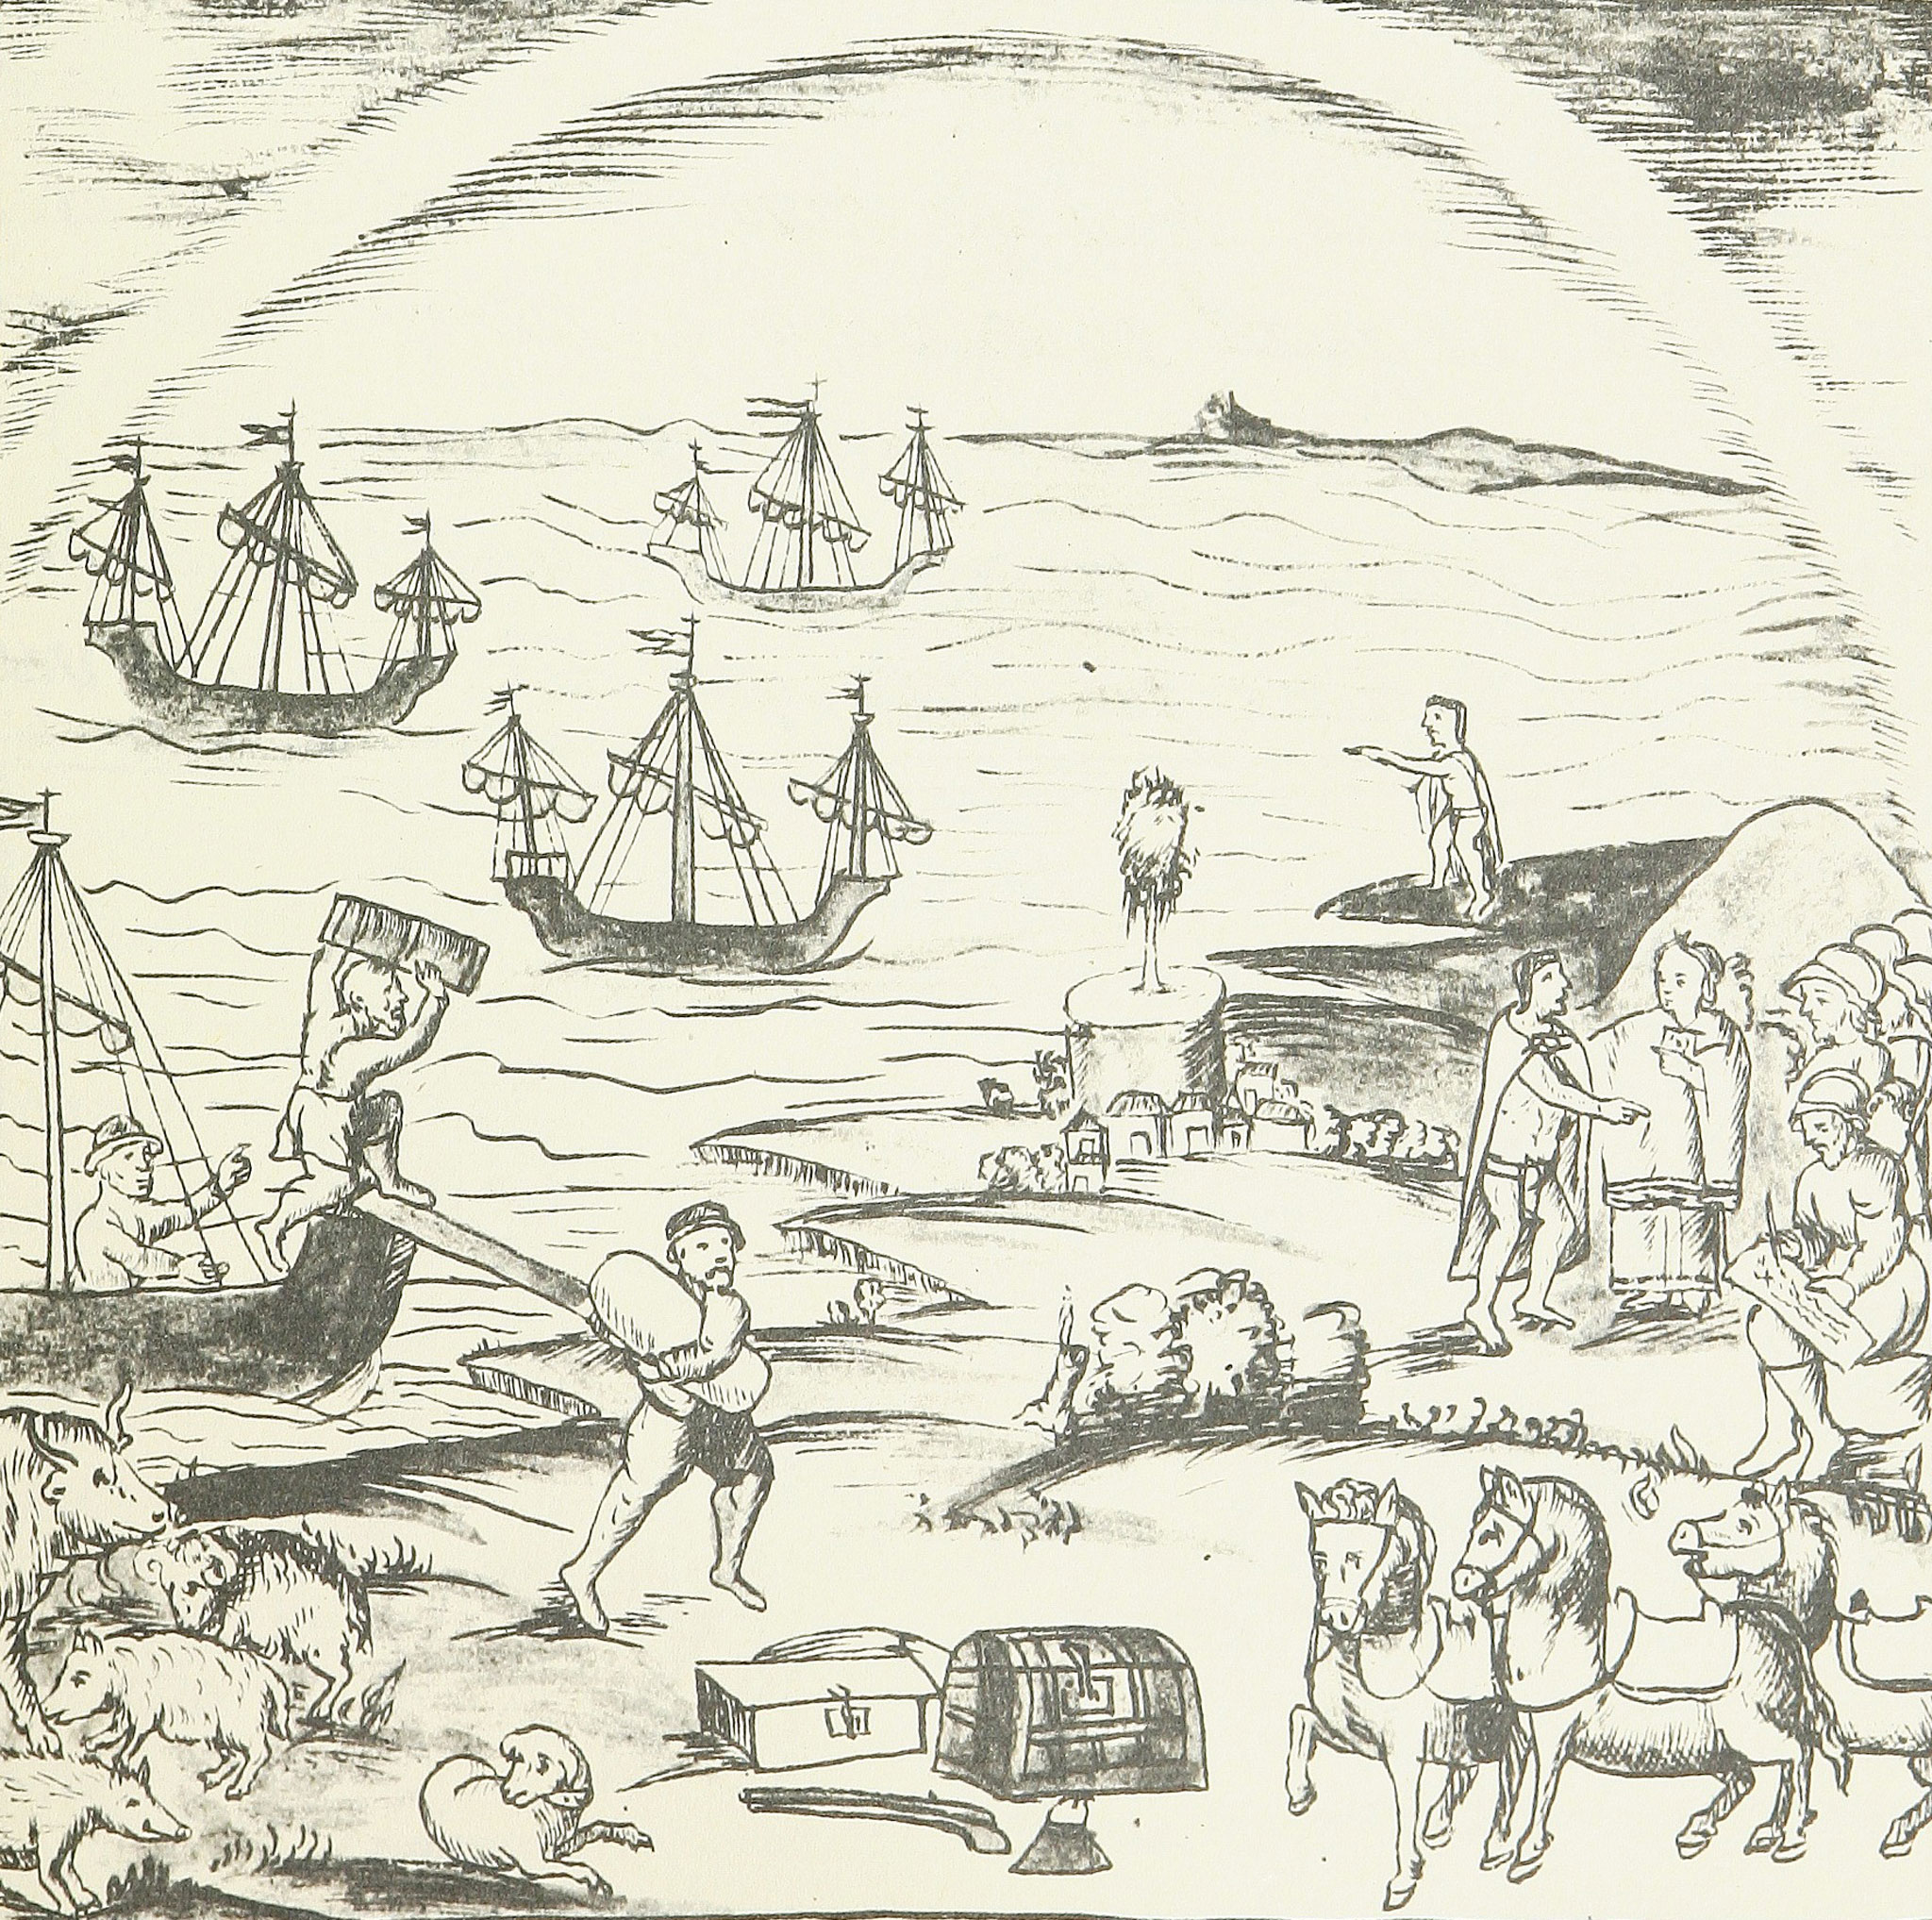 "La Malinche en el arribo de la empresa de conquista a Veracruz", Códice Florentino, siglo XVI.